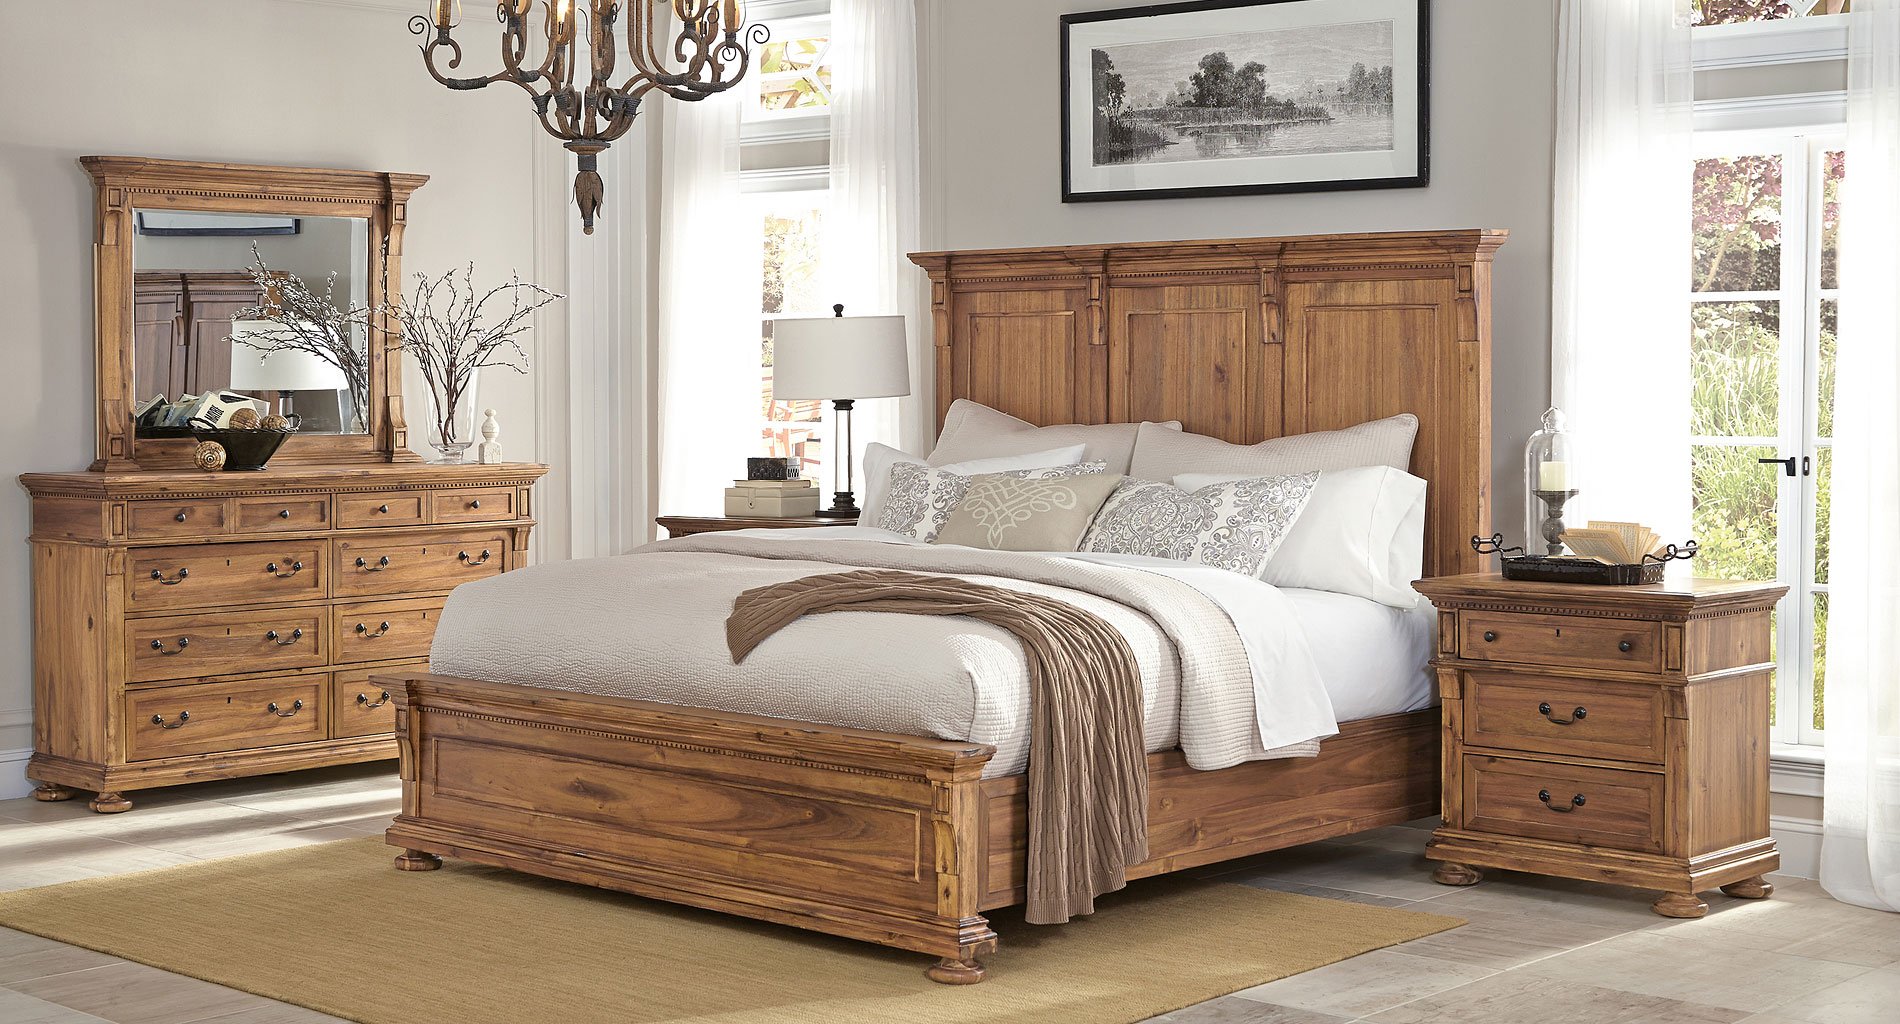 wellington court bedroom furniture